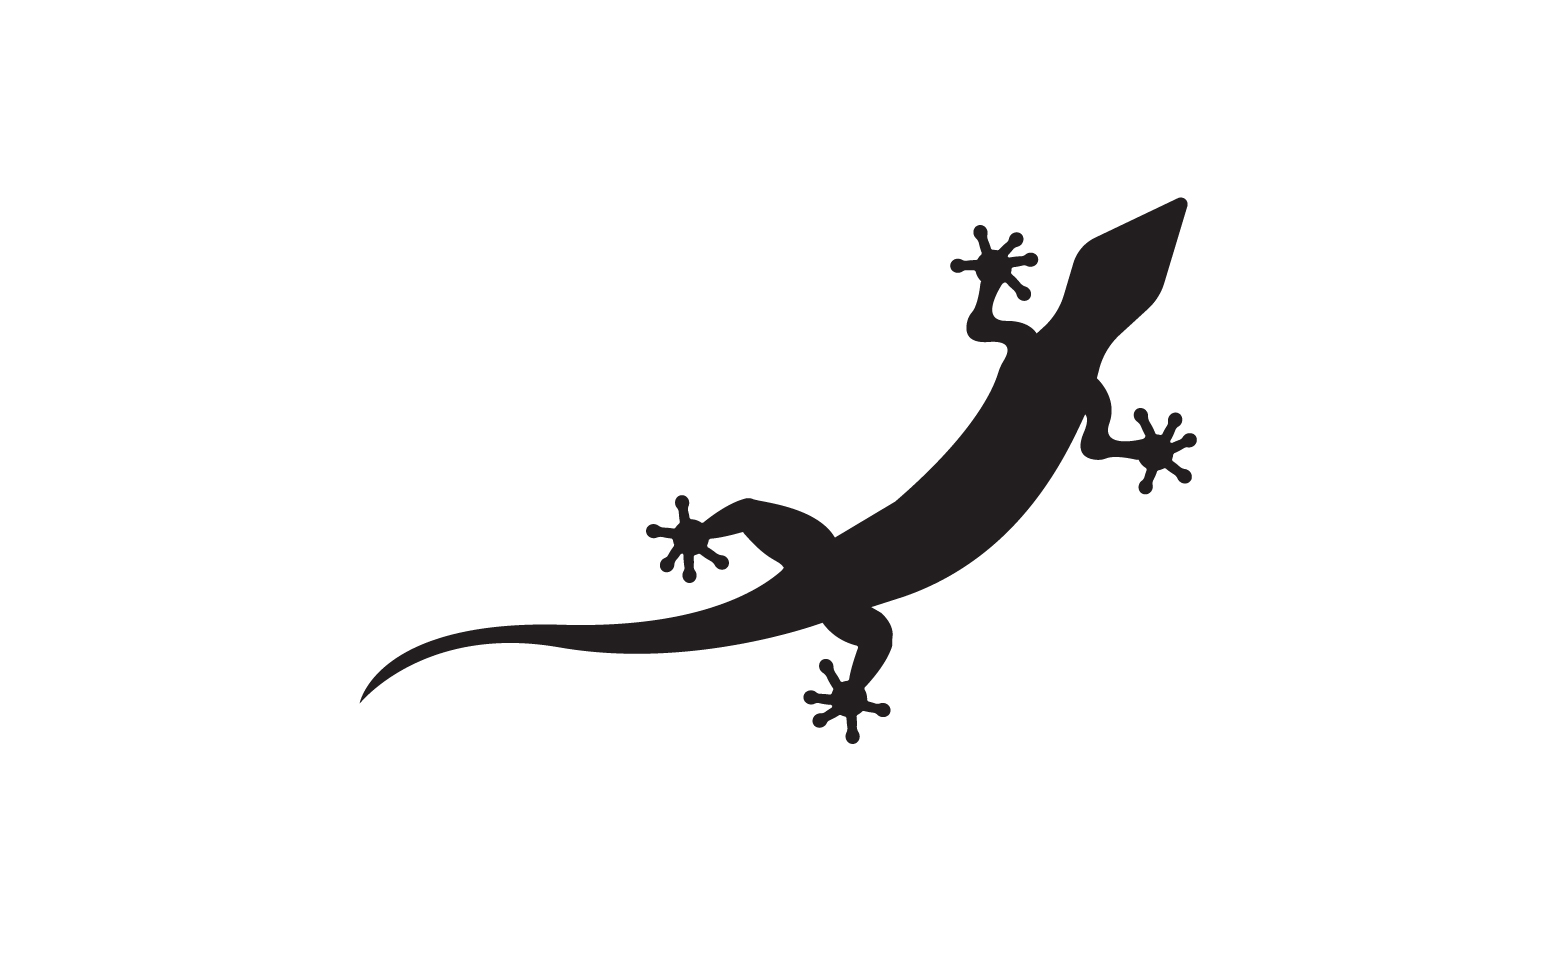 Lizard chameleon home lizard logo v48